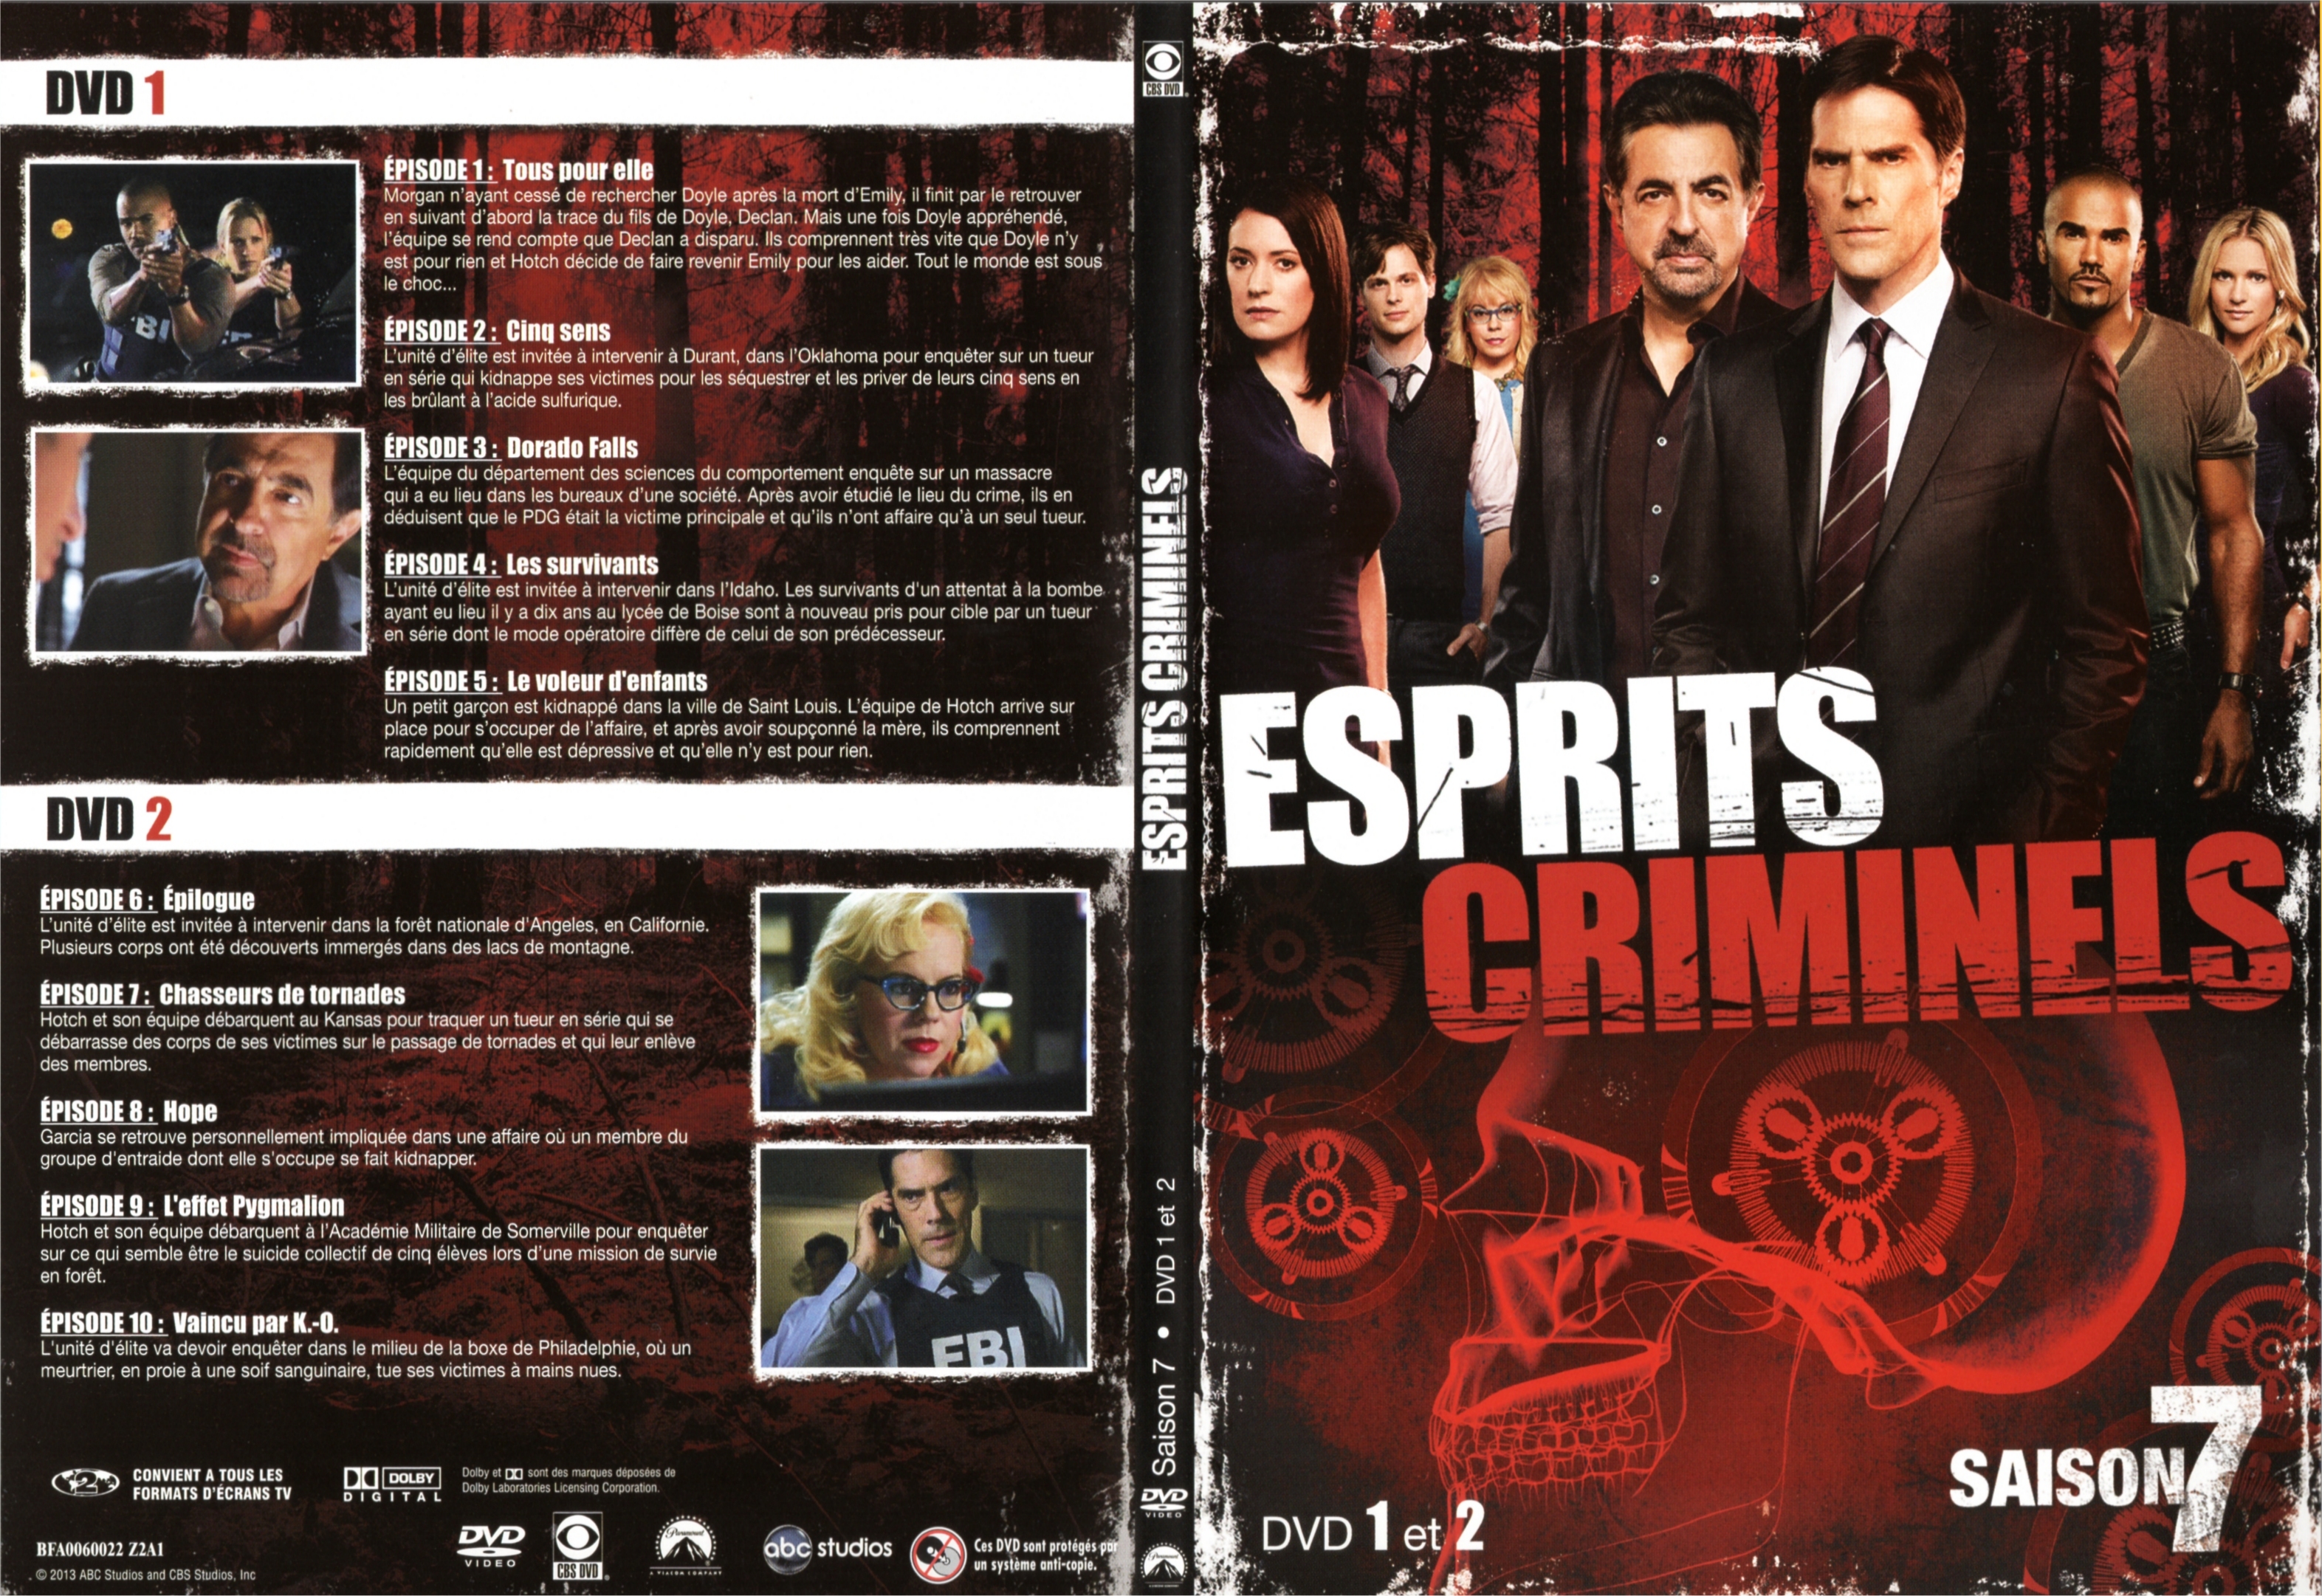 Jaquette DVD Esprits criminels Saison 7 DVD 1